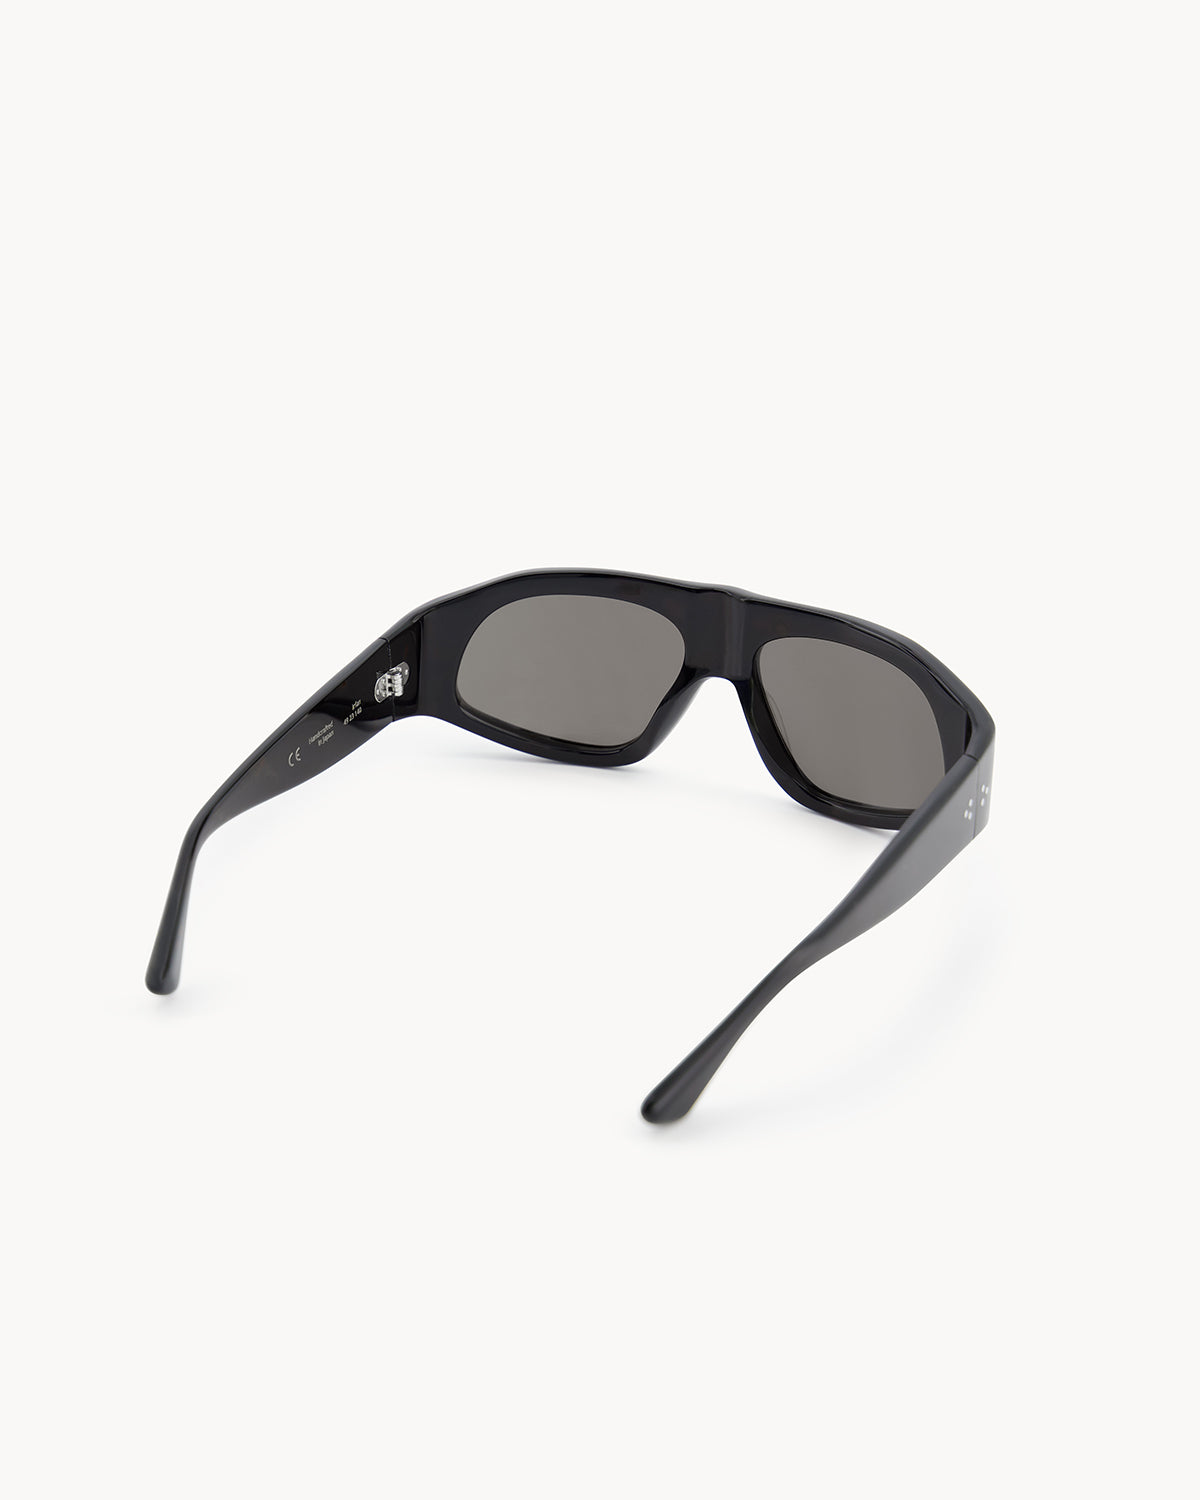 Port Tanger Irfan Sunglasses in Black Acetate and Black Lenses 3